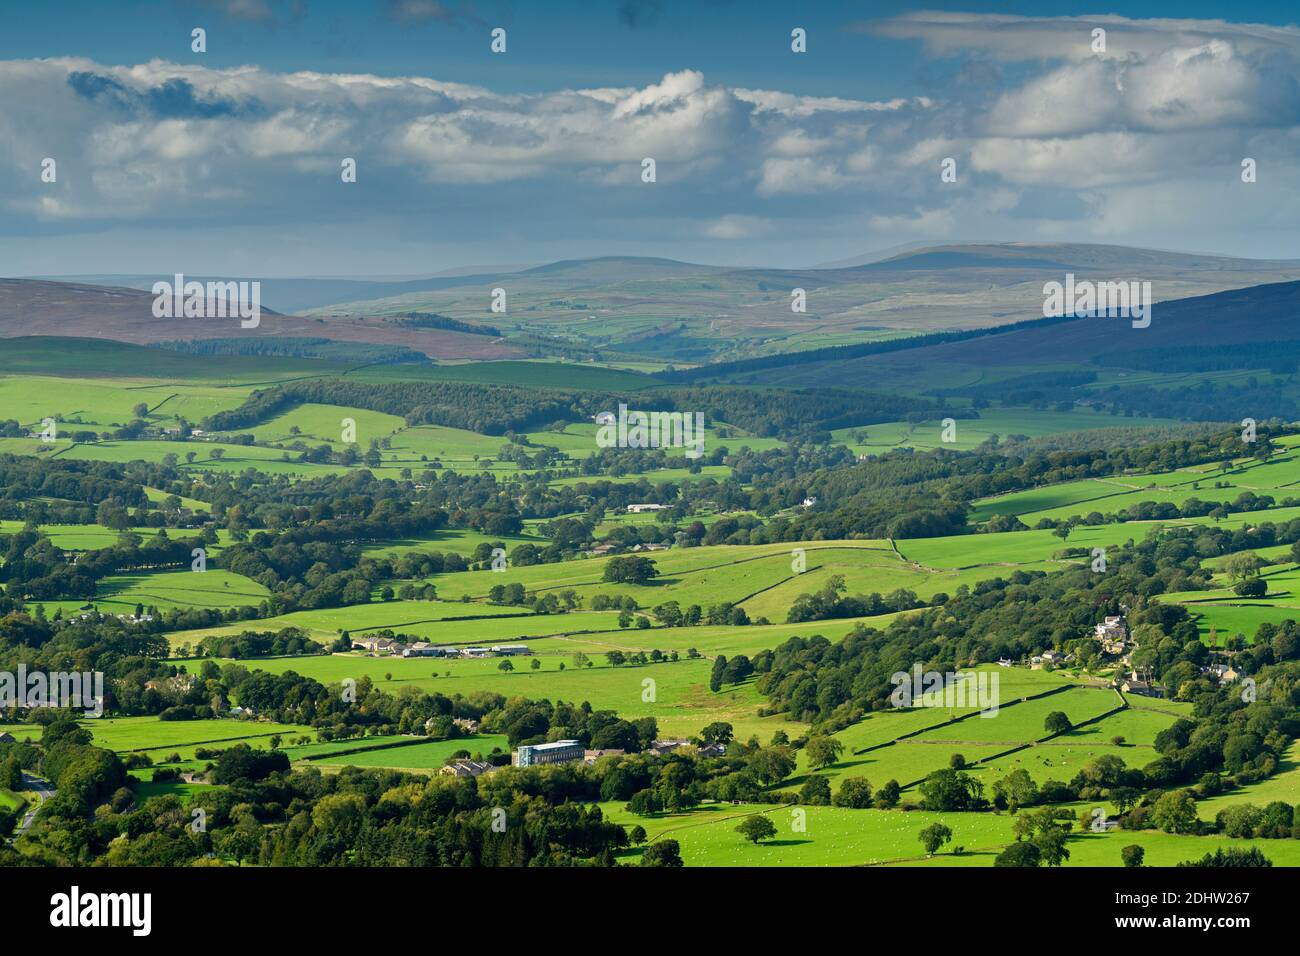 Vista panoramica sulla campagna di Wharfedale (ampia valle verde, colline ondulate, alture, luce del sole sulla terra, cielo blu) - West Yorkshire, Inghilterra, Regno Unito. Foto Stock